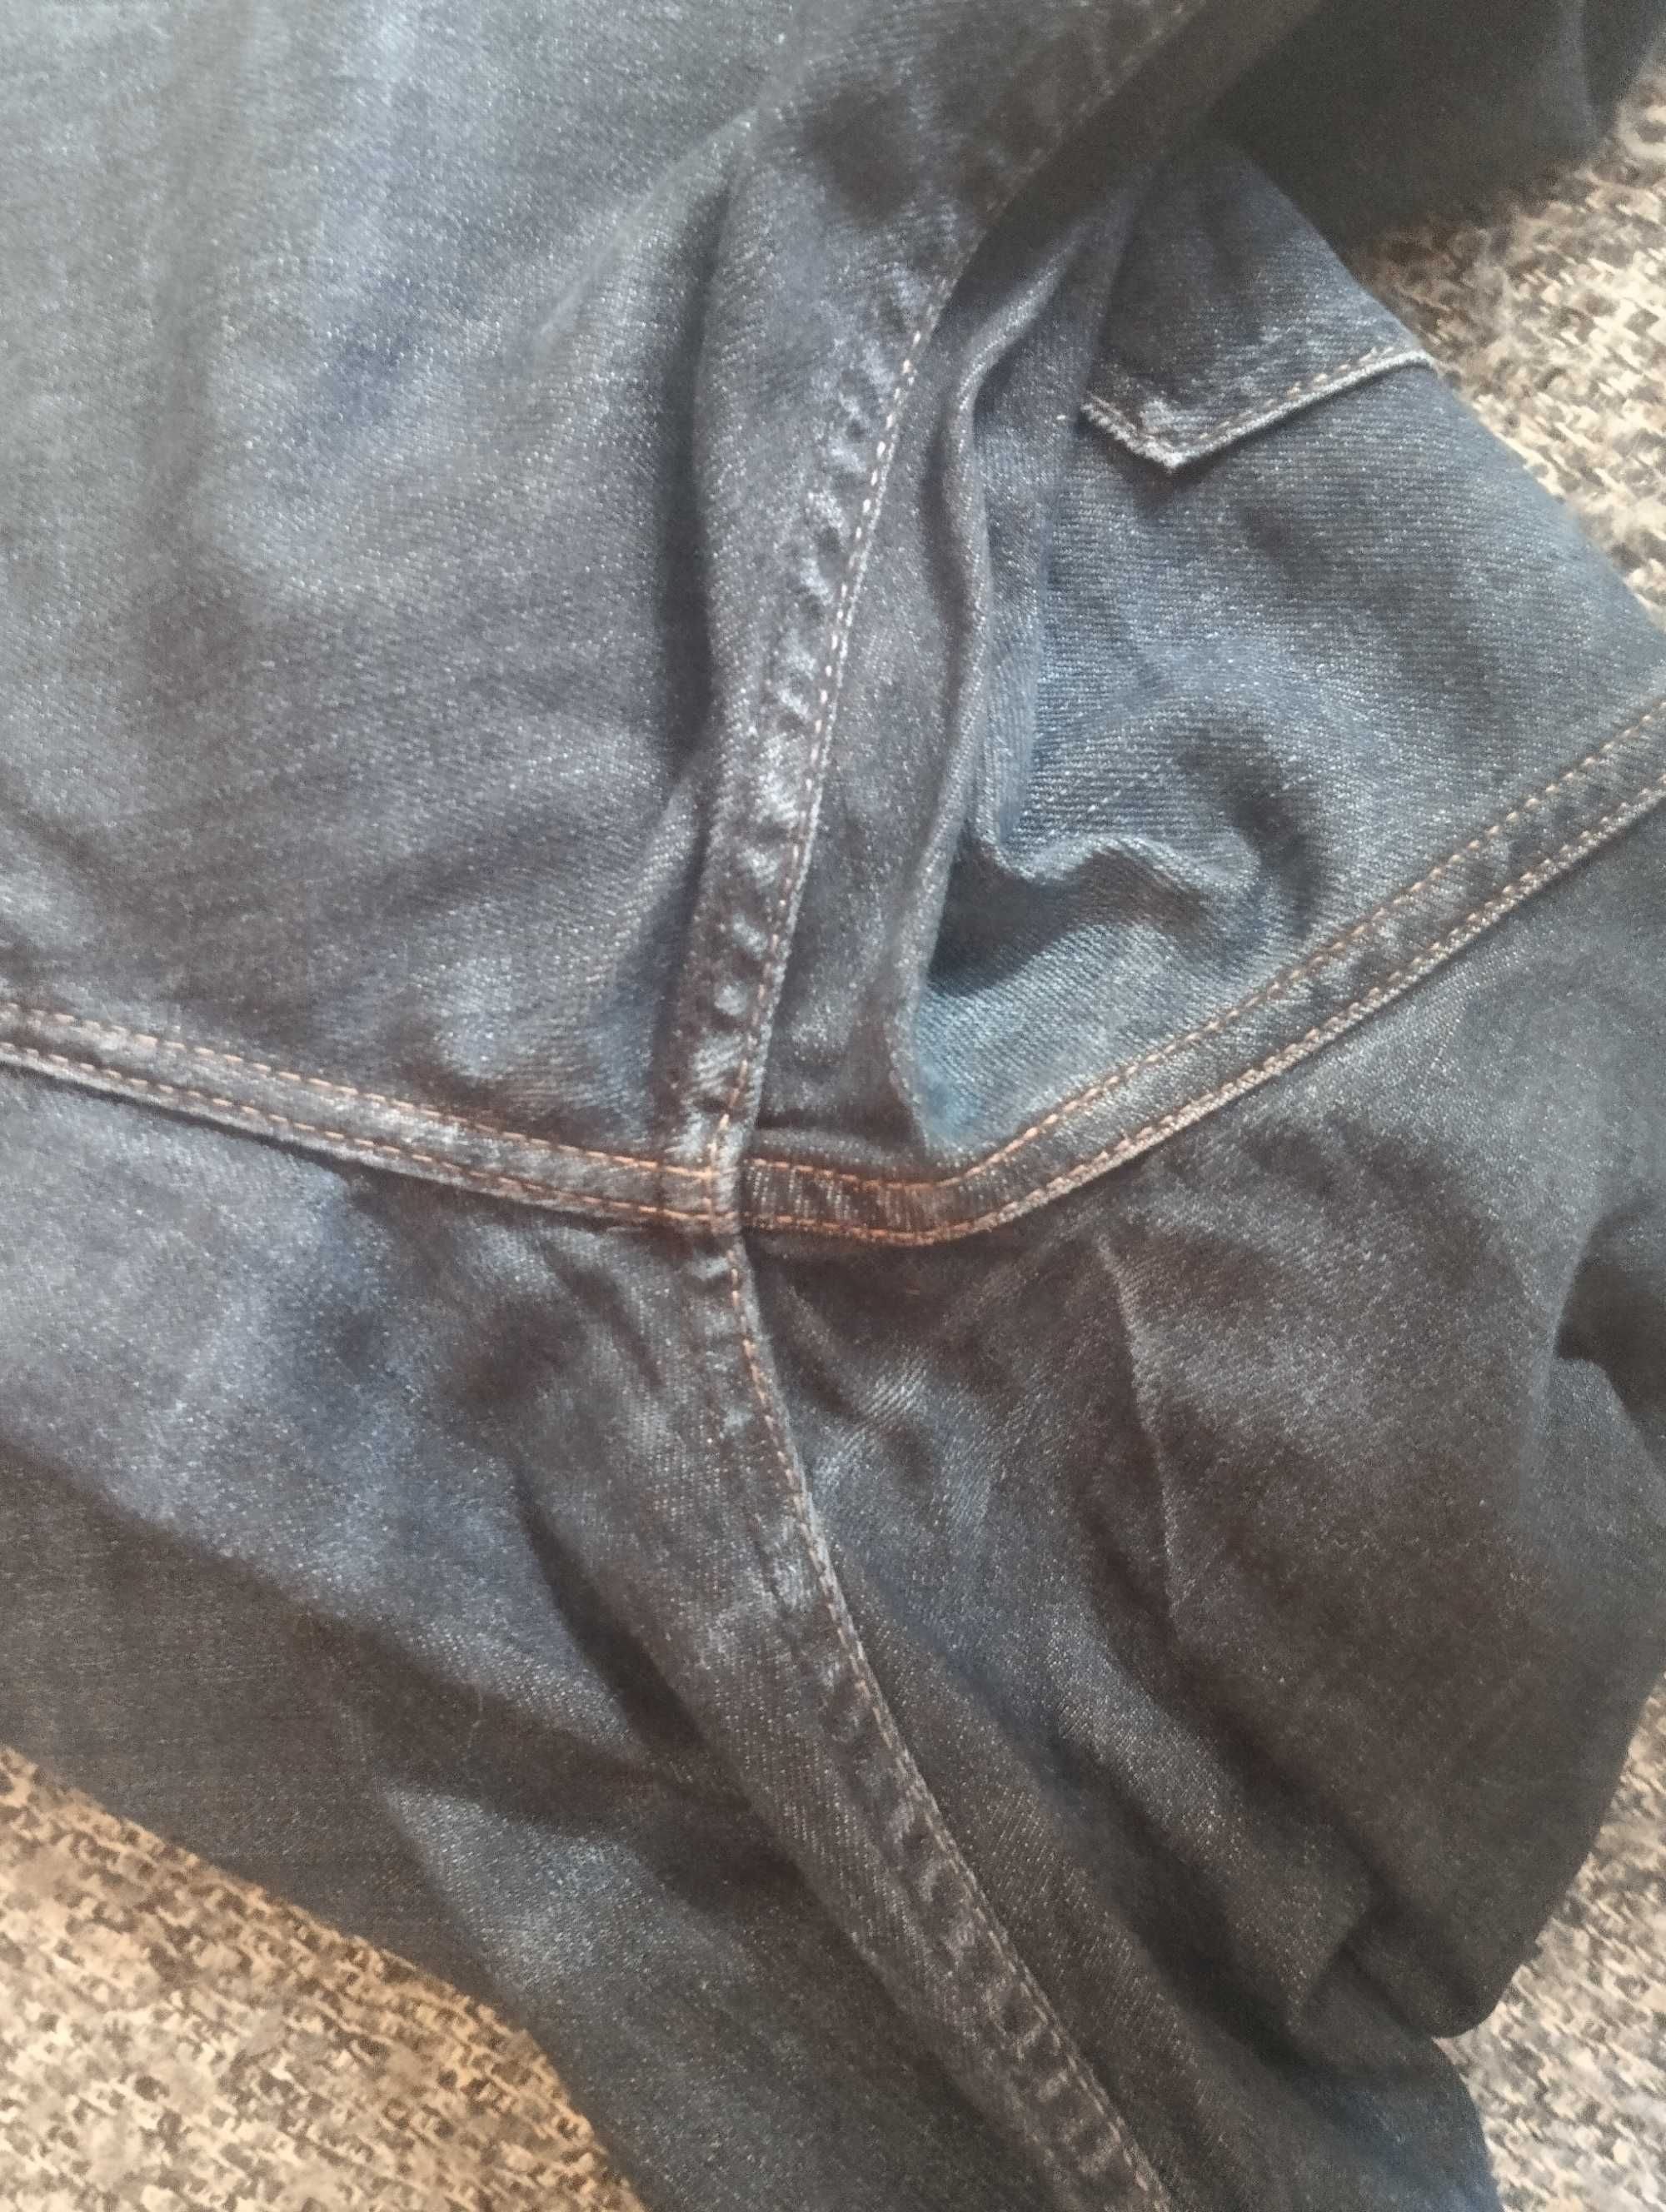 брендовые джинсы LEE COOPER W30L32 (ЛИ КУПЕР) небольшой стрейч